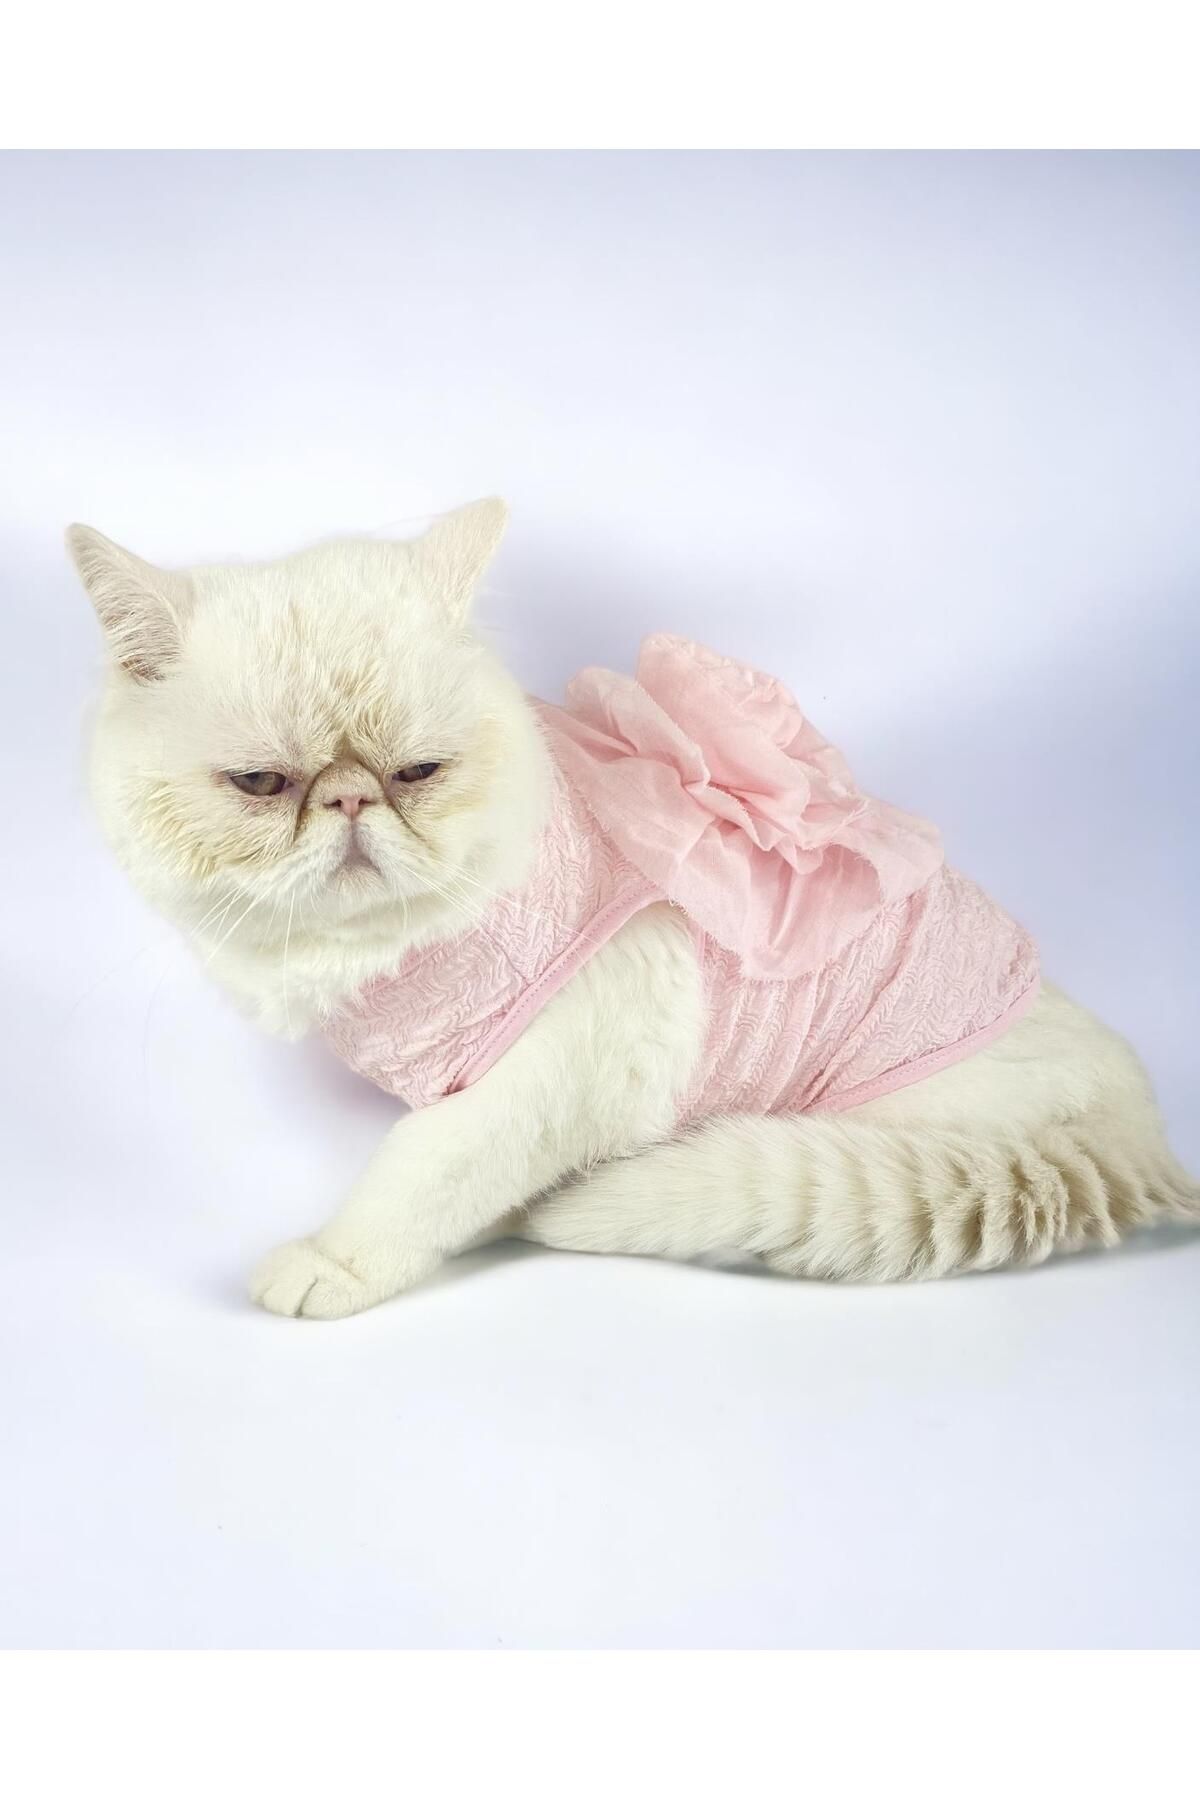 Kemique Rosie Rose Tişört Kedi Kıyafeti Kedi Elbisesi Kedi Kostümü